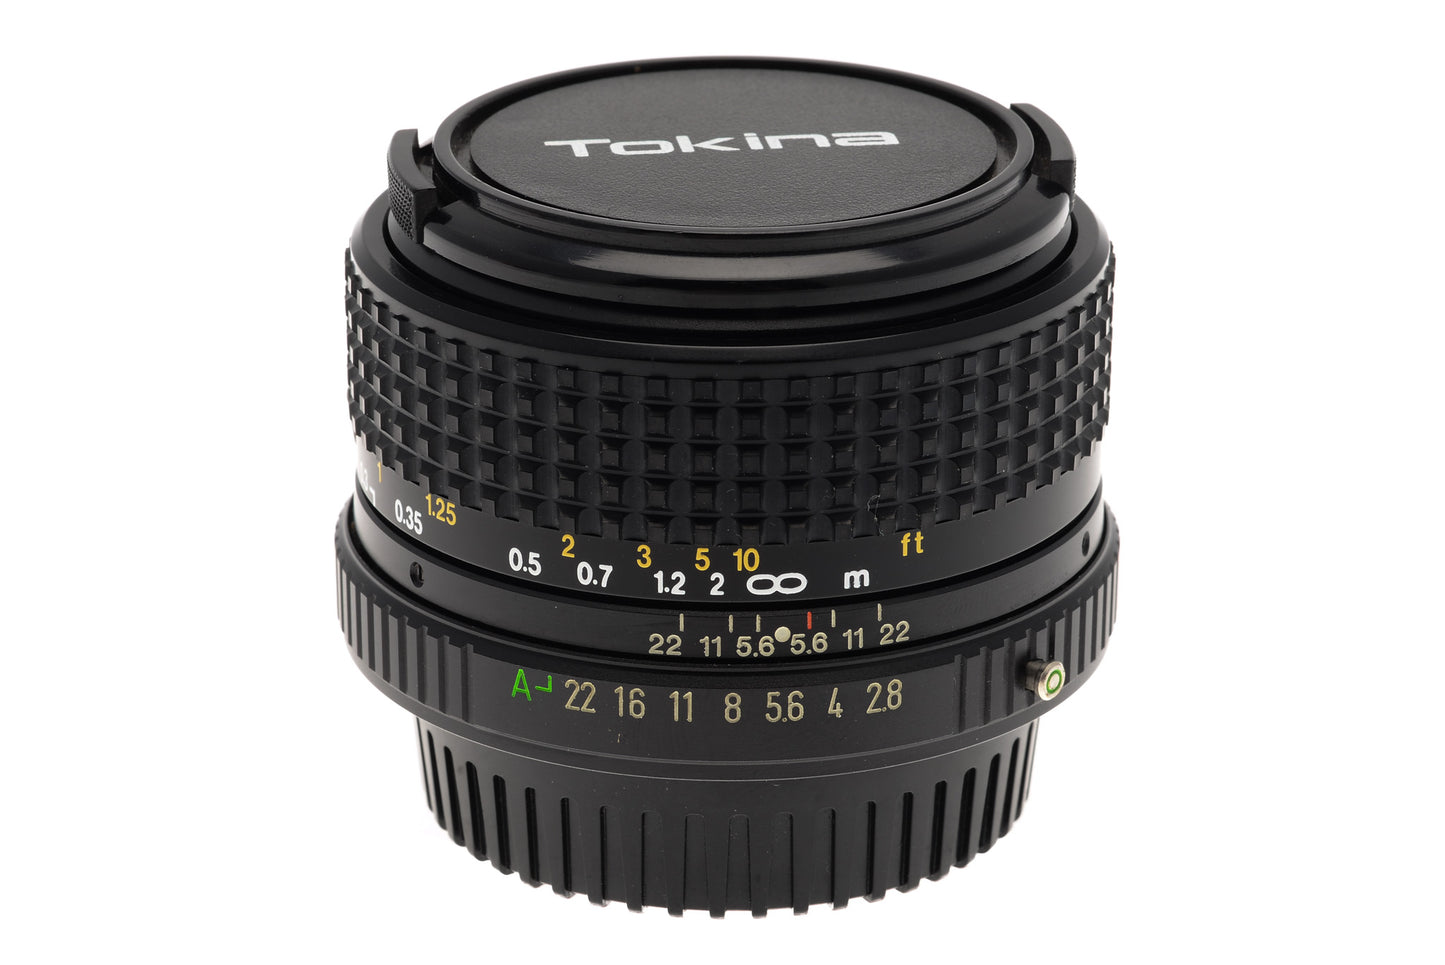 Tokina 28mm f2.8 - Lens